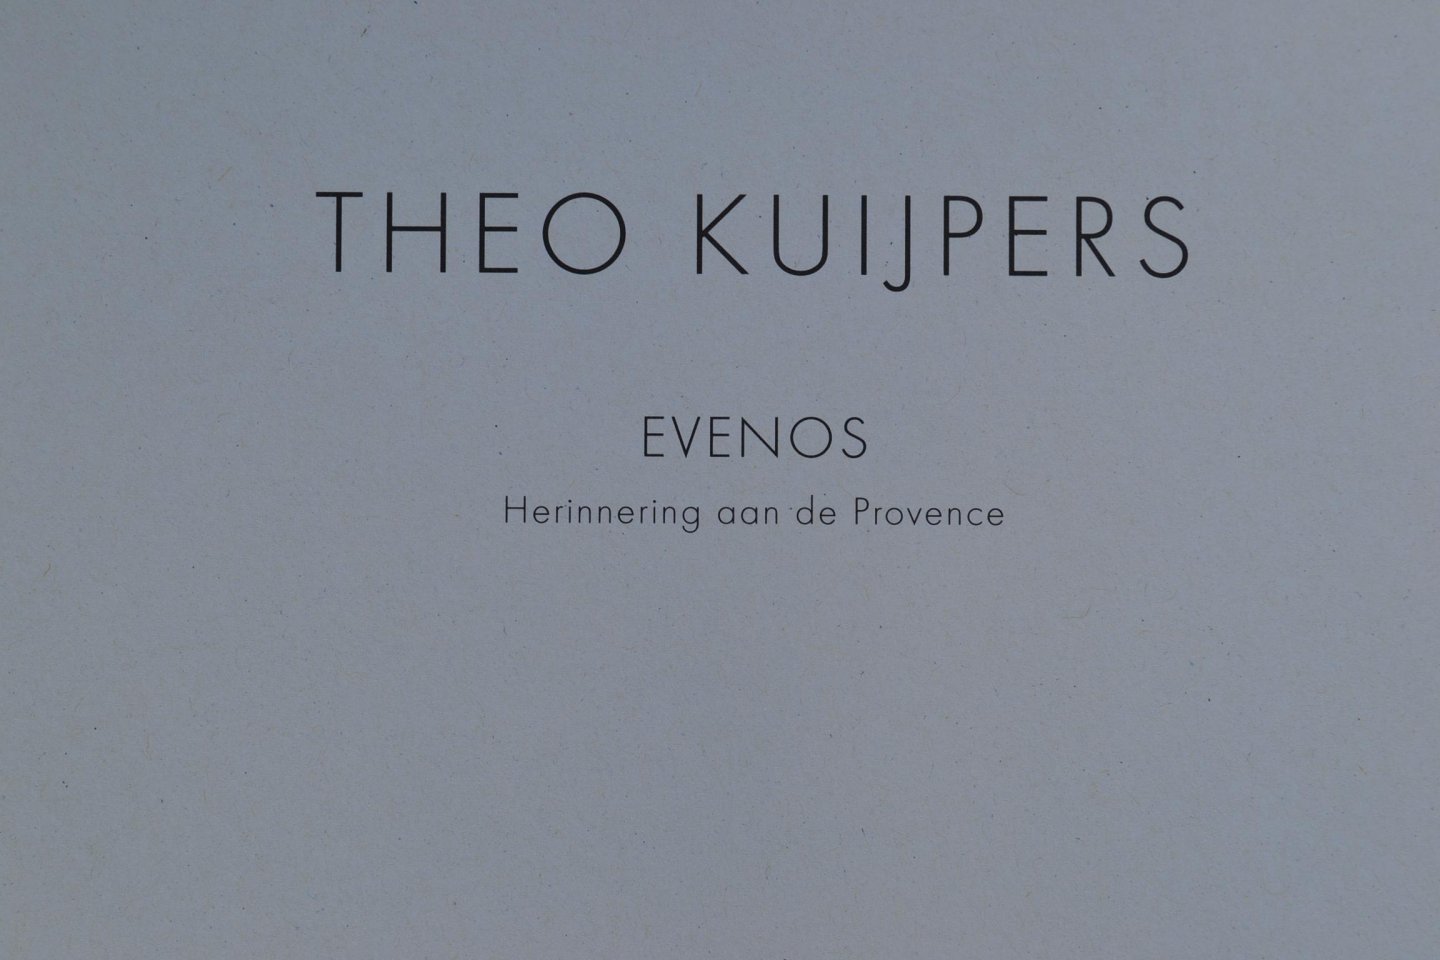 Kuijpers, Theo - Theo Kuijpers -  "Evenos, herinnering aan de Provence"